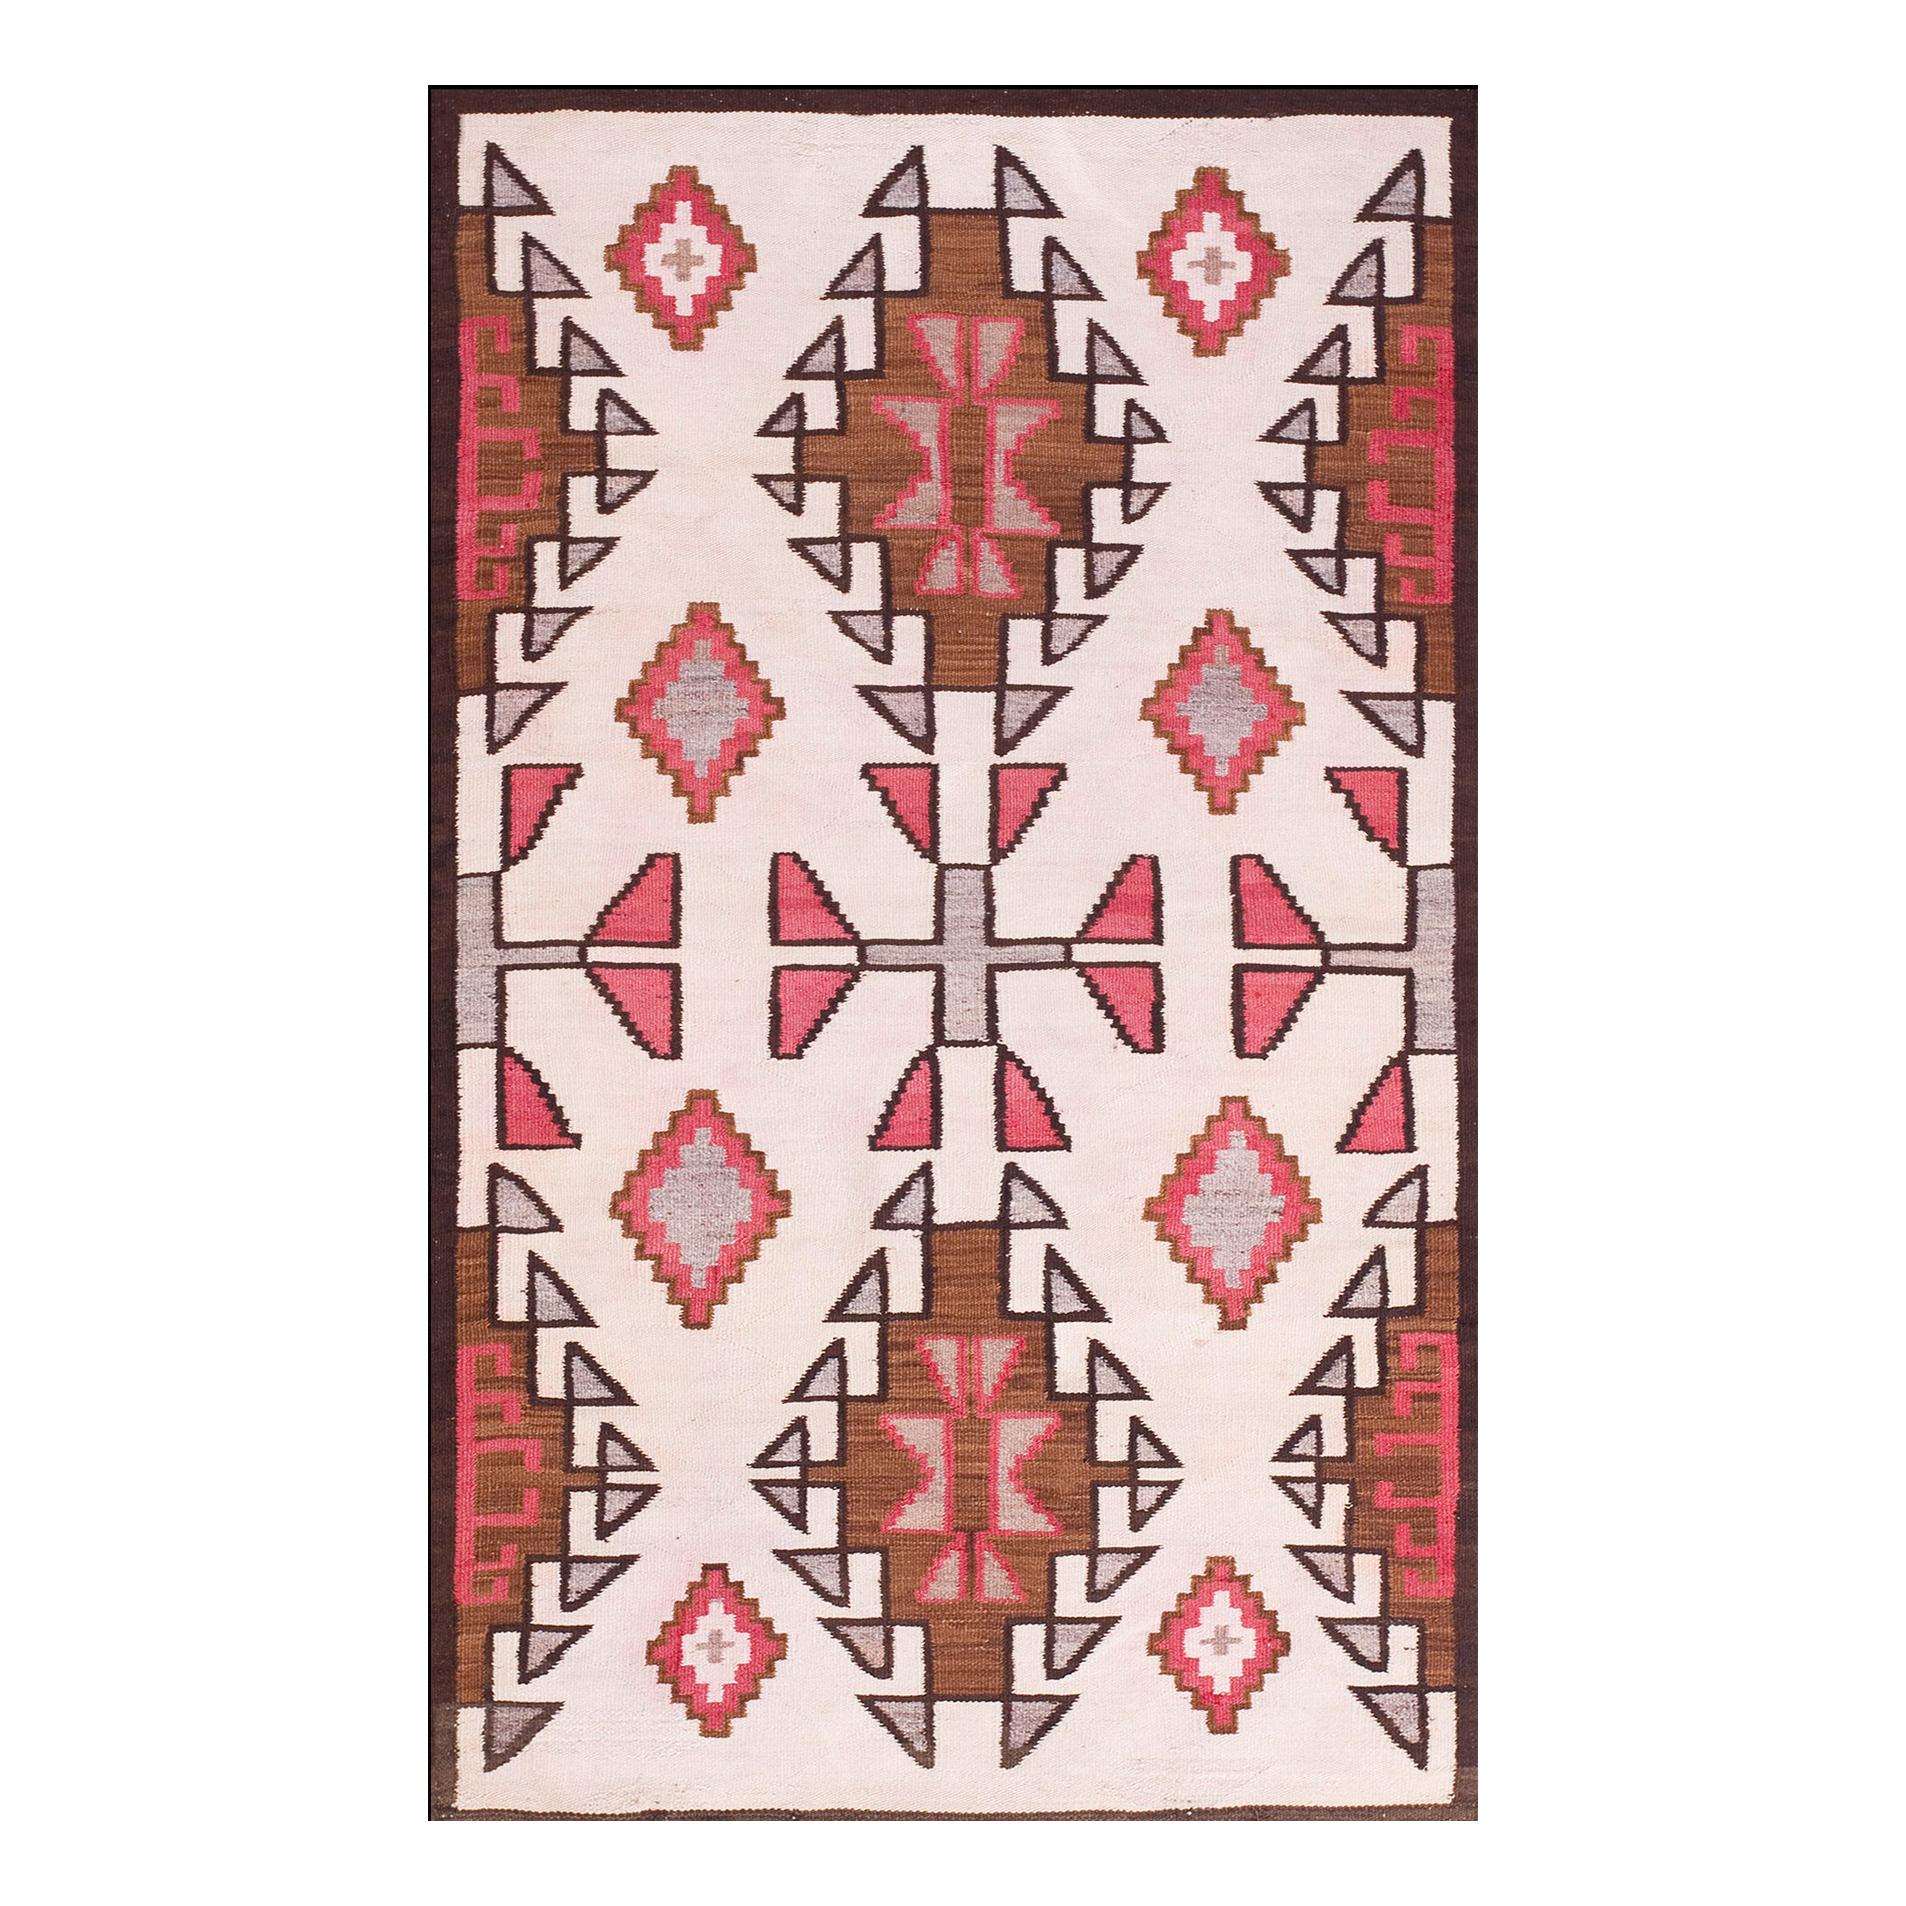 Amerikanischer Navajo-Teppich des frühen 20. Jahrhunderts ( 3'6" X 6' - 107 X 183)